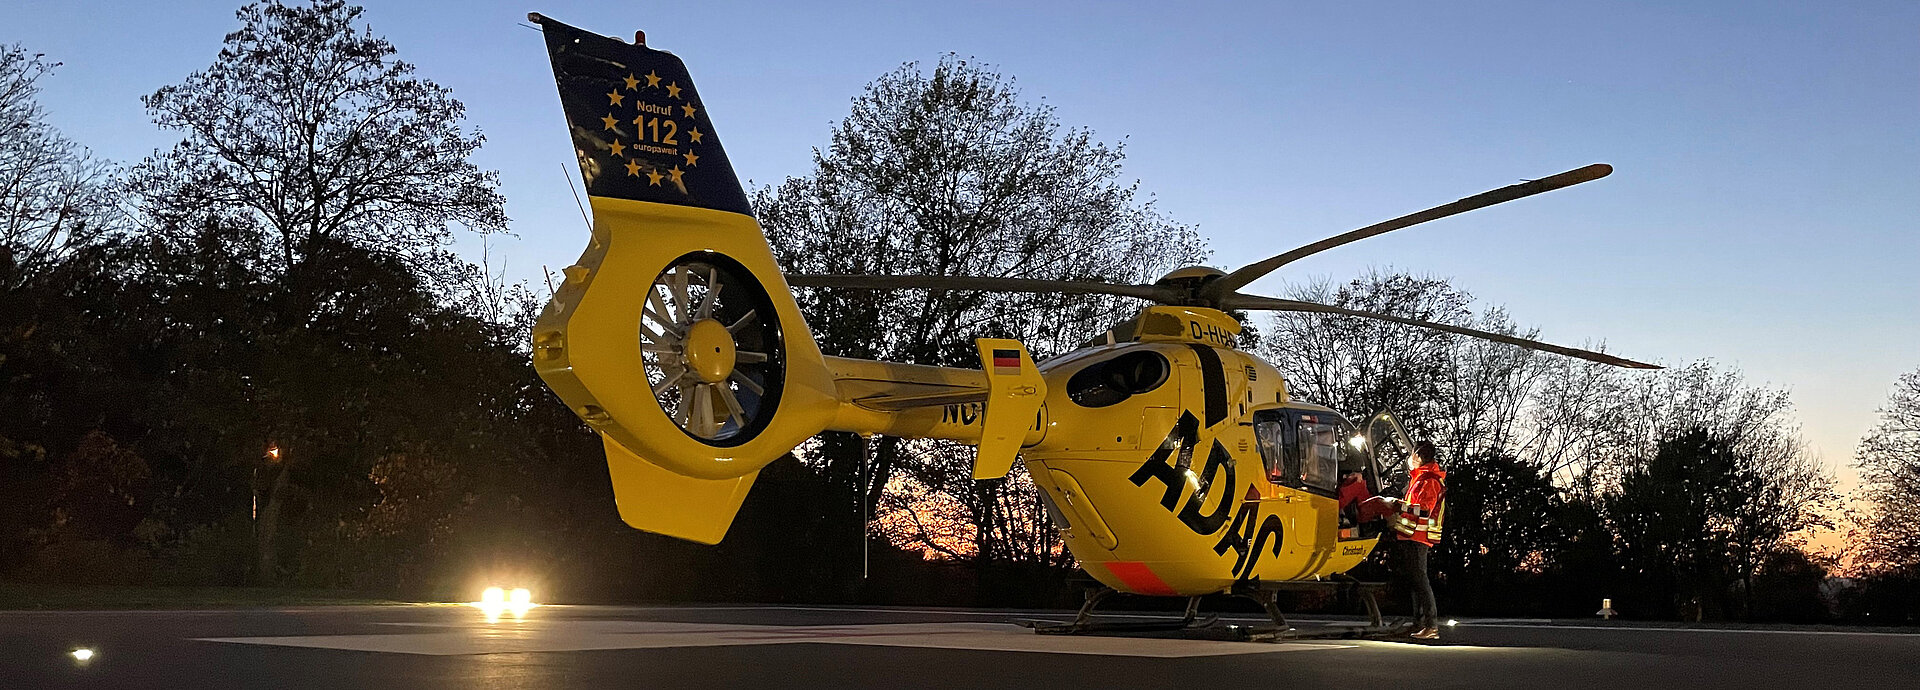 Rettungshubschrauber Christoph 25 nach der Landung auf unserem Hubschrauberlandeplatz am Klinikum Wetzlar.